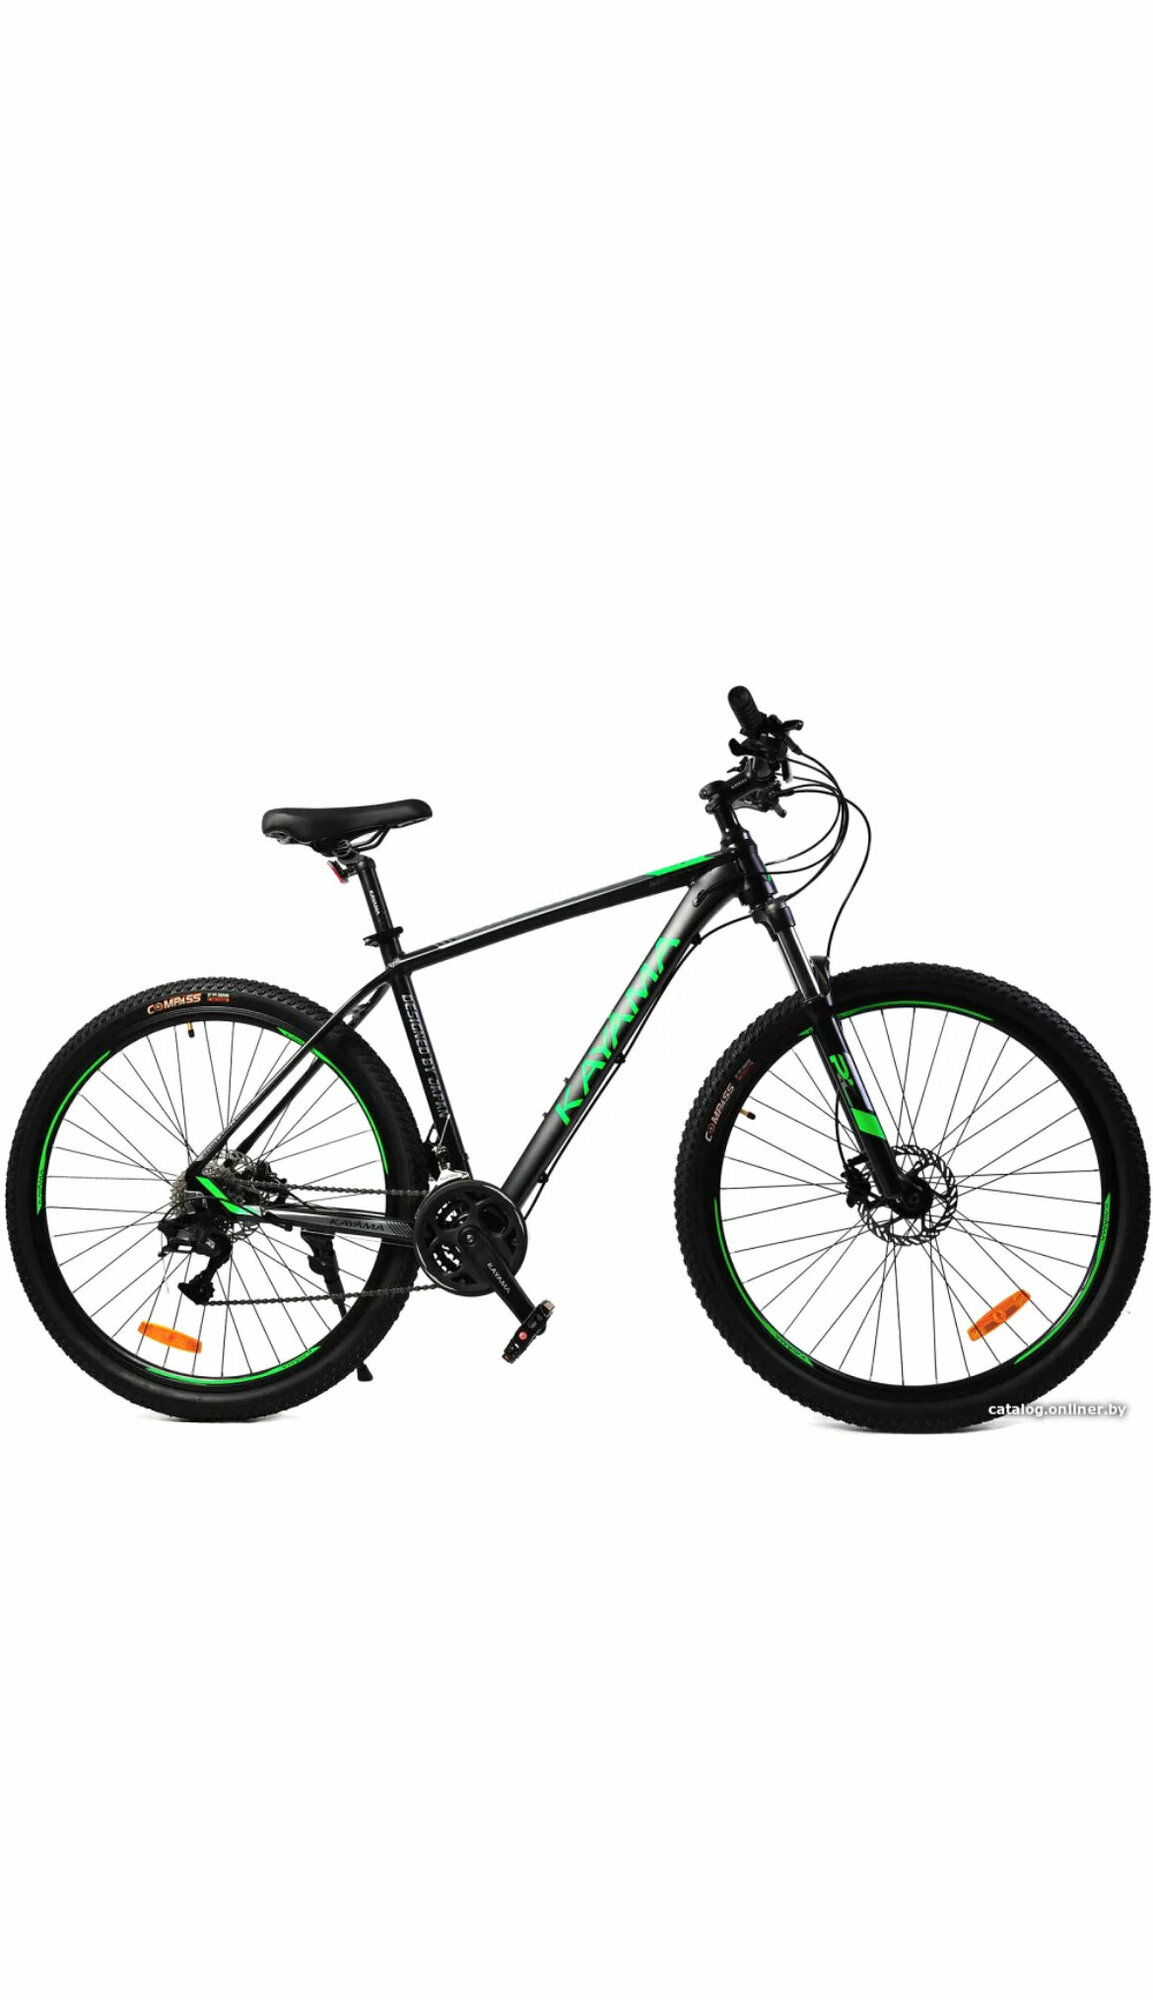 Горный велосипед Kayama Neo 29, 29 дюймов, 24 скорости, рама алюминий 20 дюймов, тормоз гидравлика. green